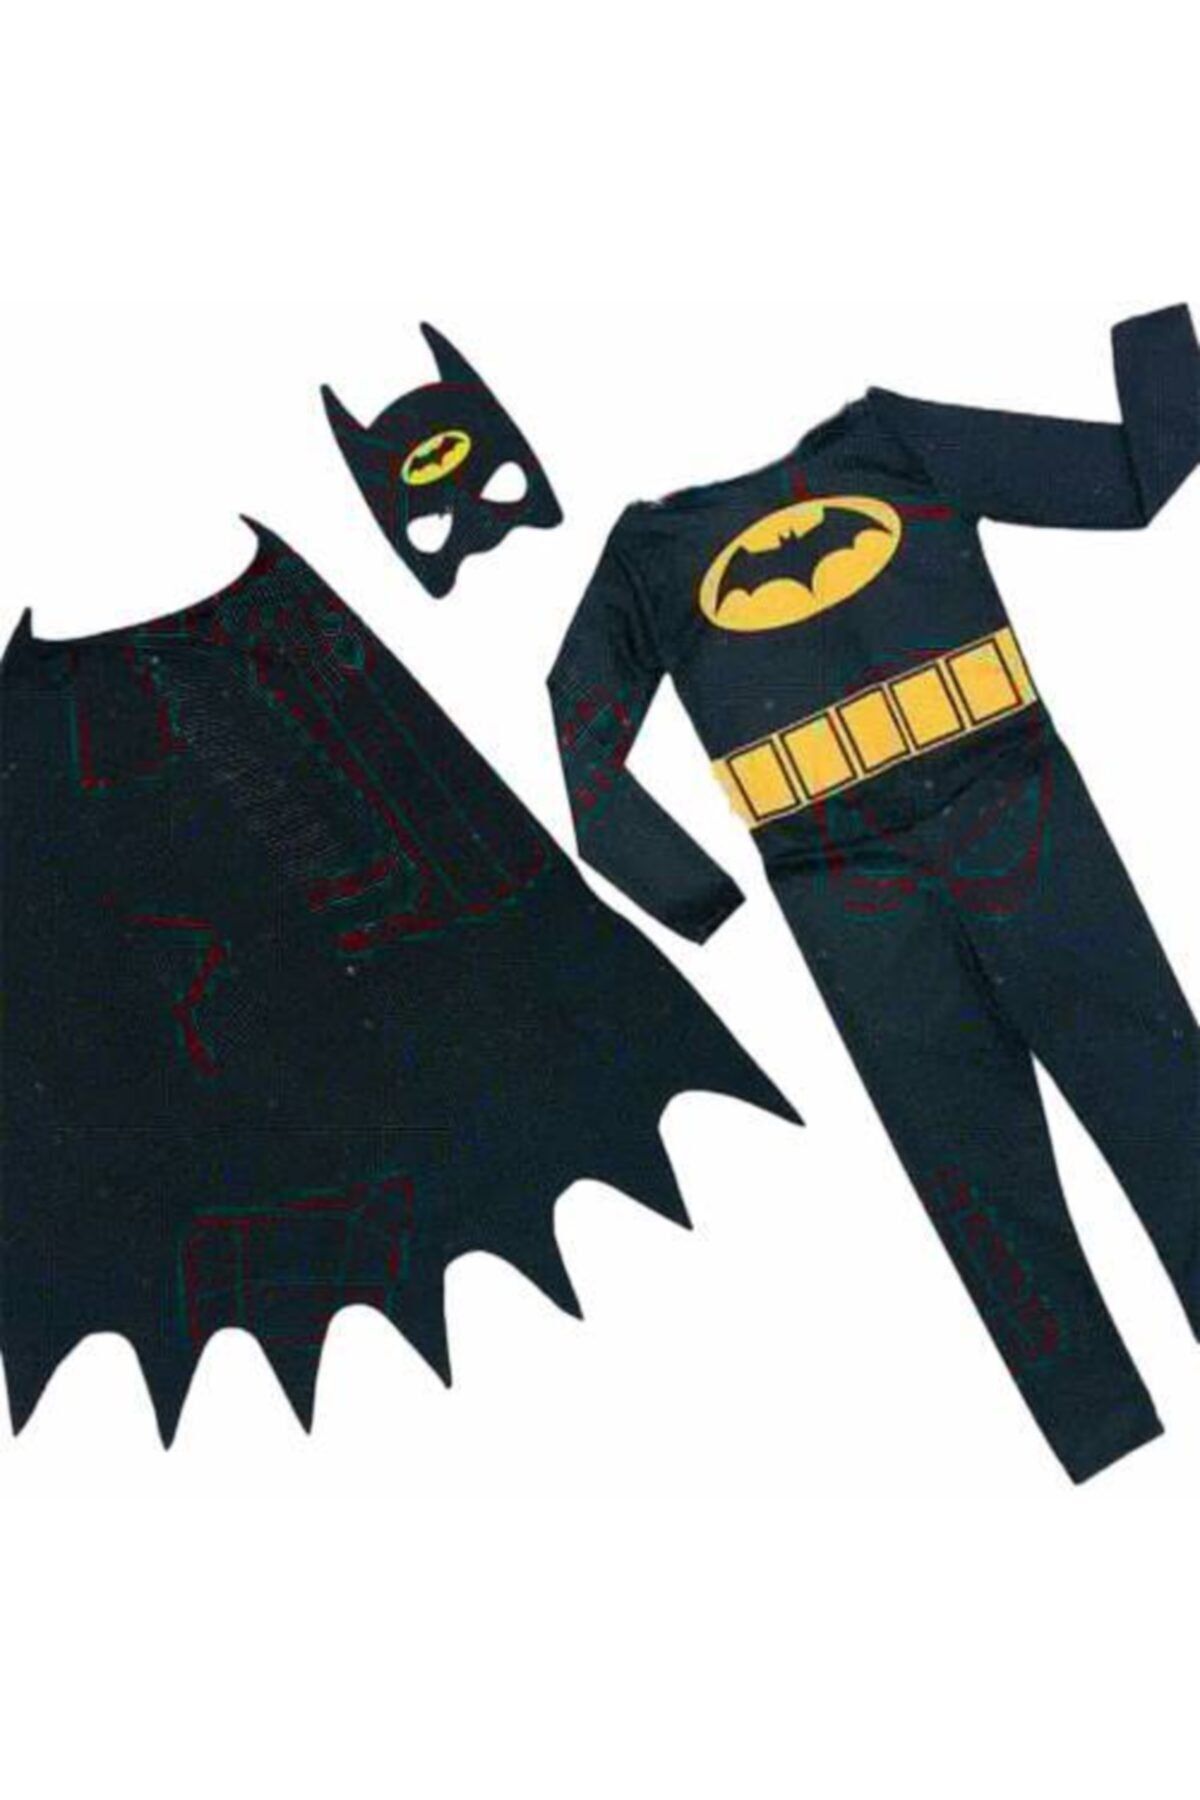 Mashotrend Erkek Çocuk Siyah Pelerinli Batman Çocuk Kostümü - Kara Şövalye Batman Çocuk Kostümü